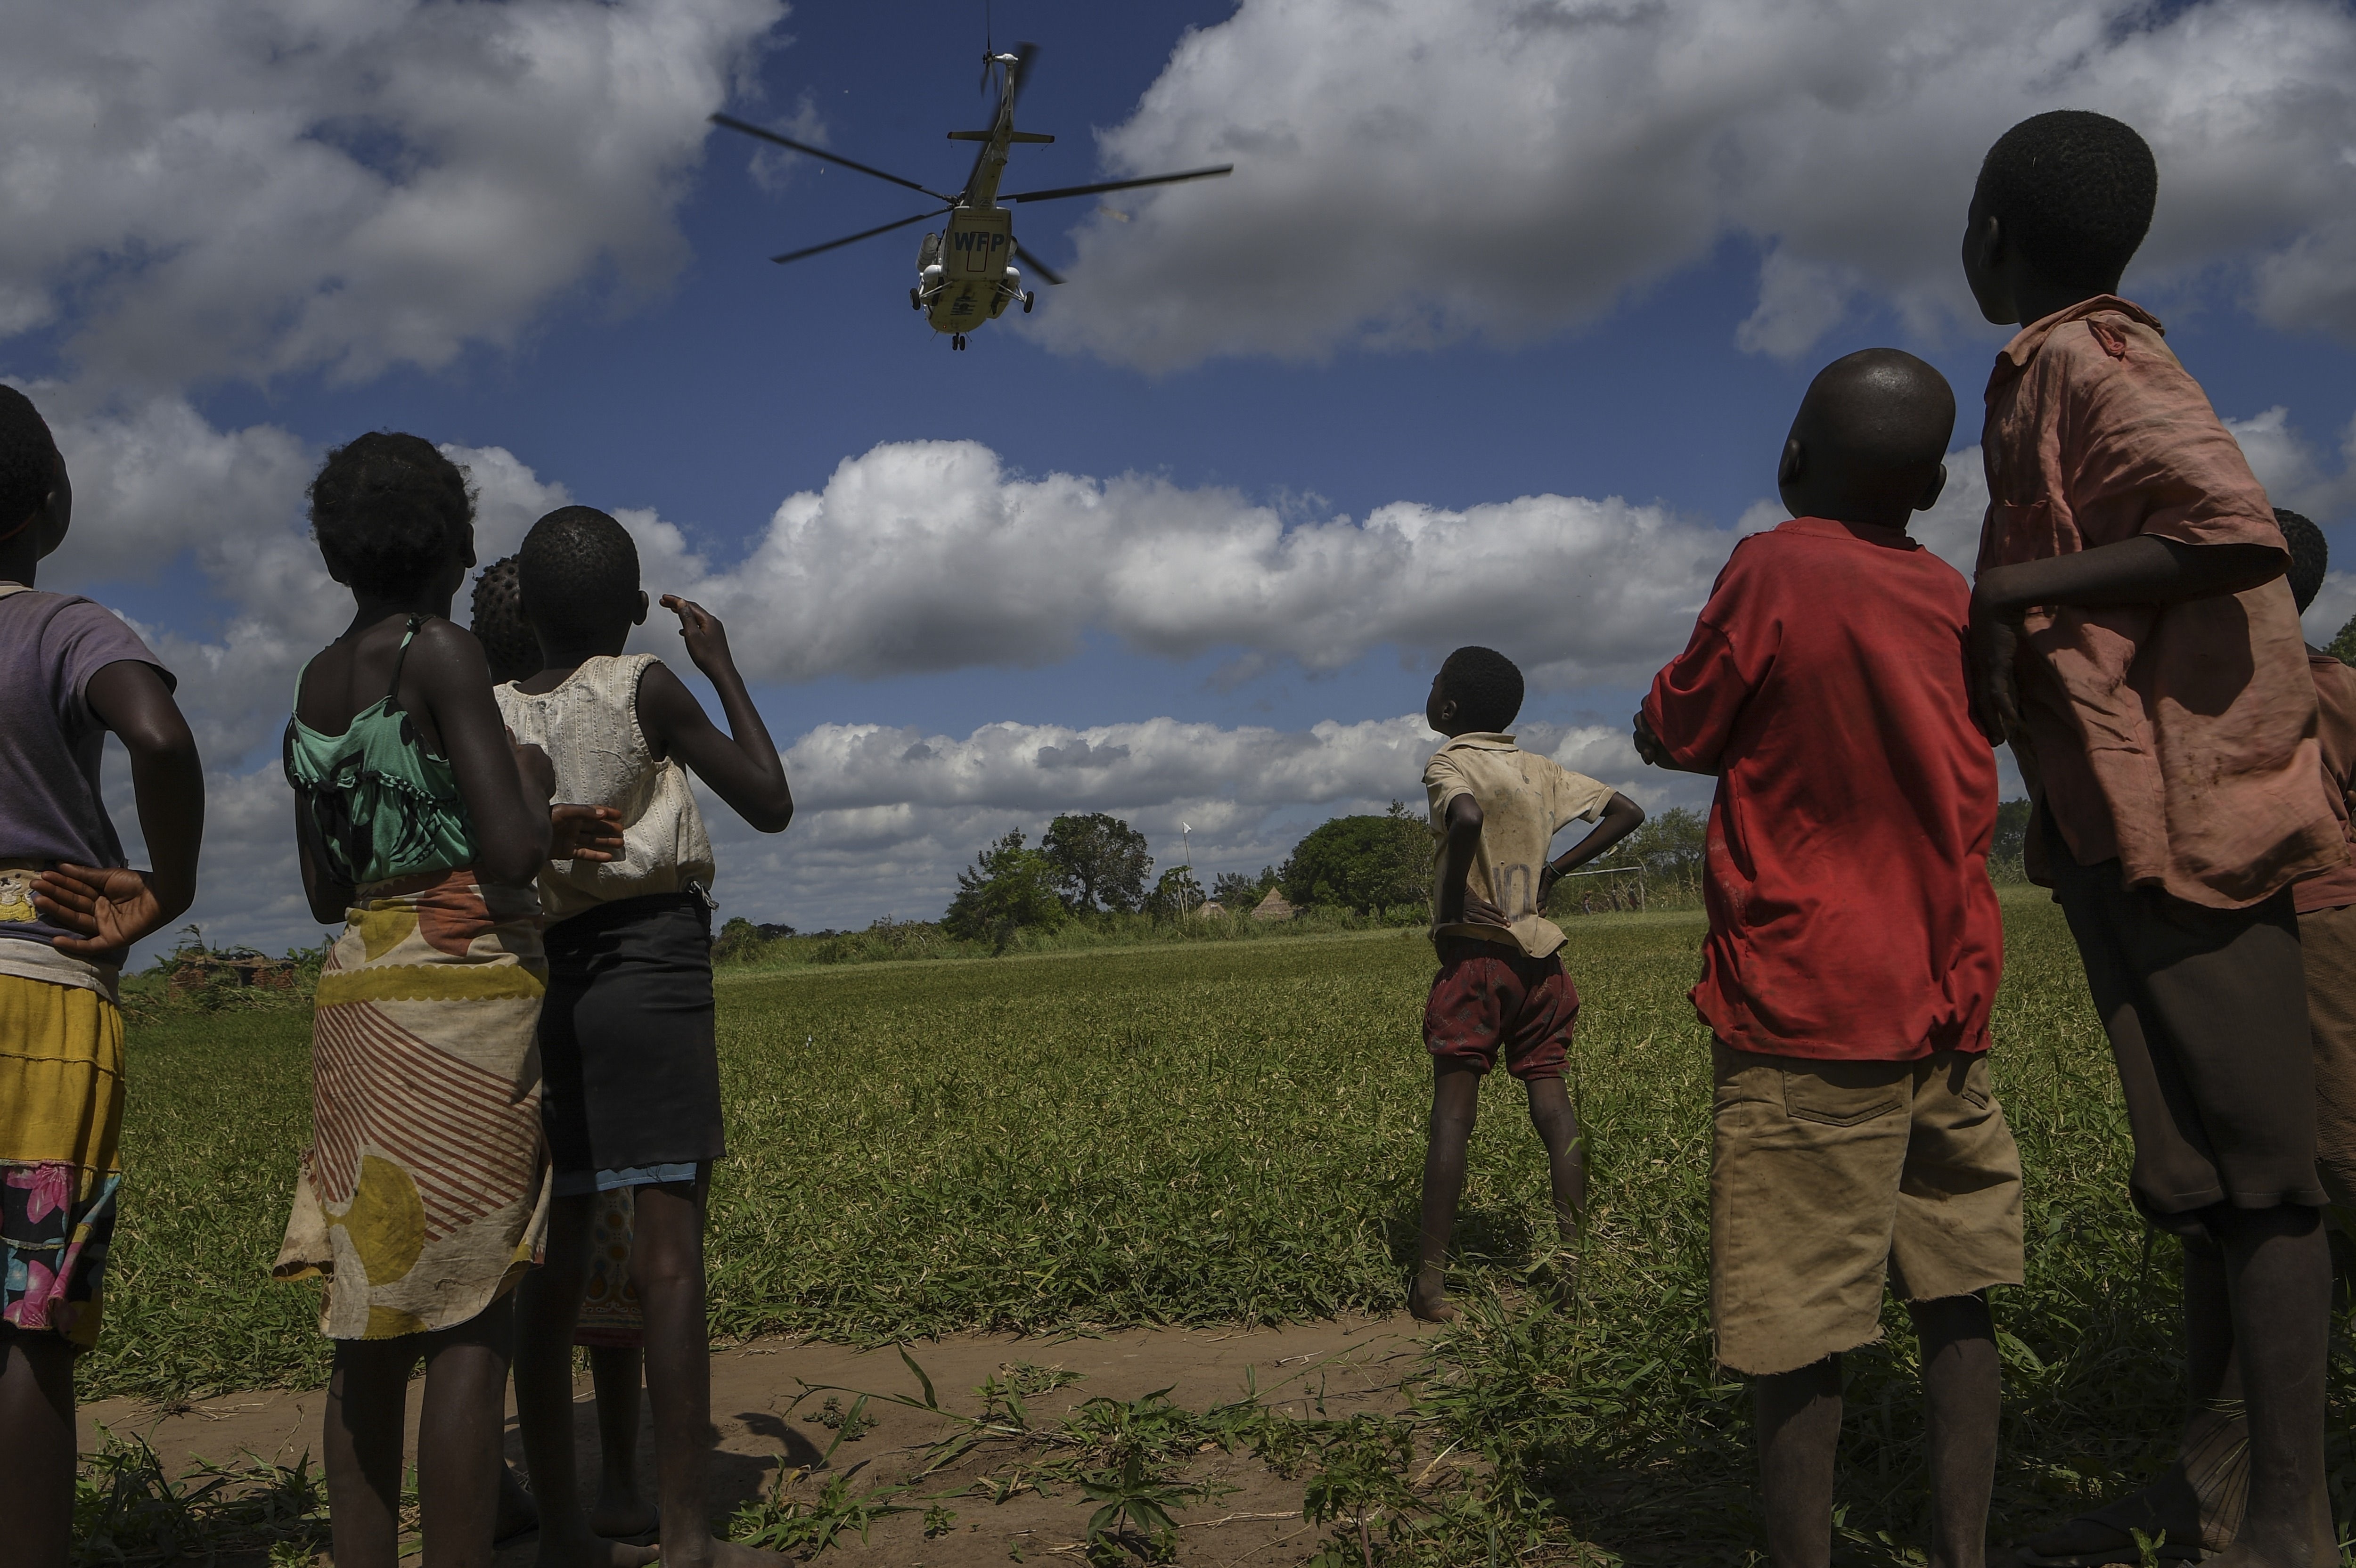 02/03/2021 Un grupo de niños observa un helicóptero.
POLITICA AFRICA MOZAMBIQUE AFRICA INTERNACIONAL
CORBAN LUNDBORG / ZUMA PRESS / CONTACTOPHOTO
